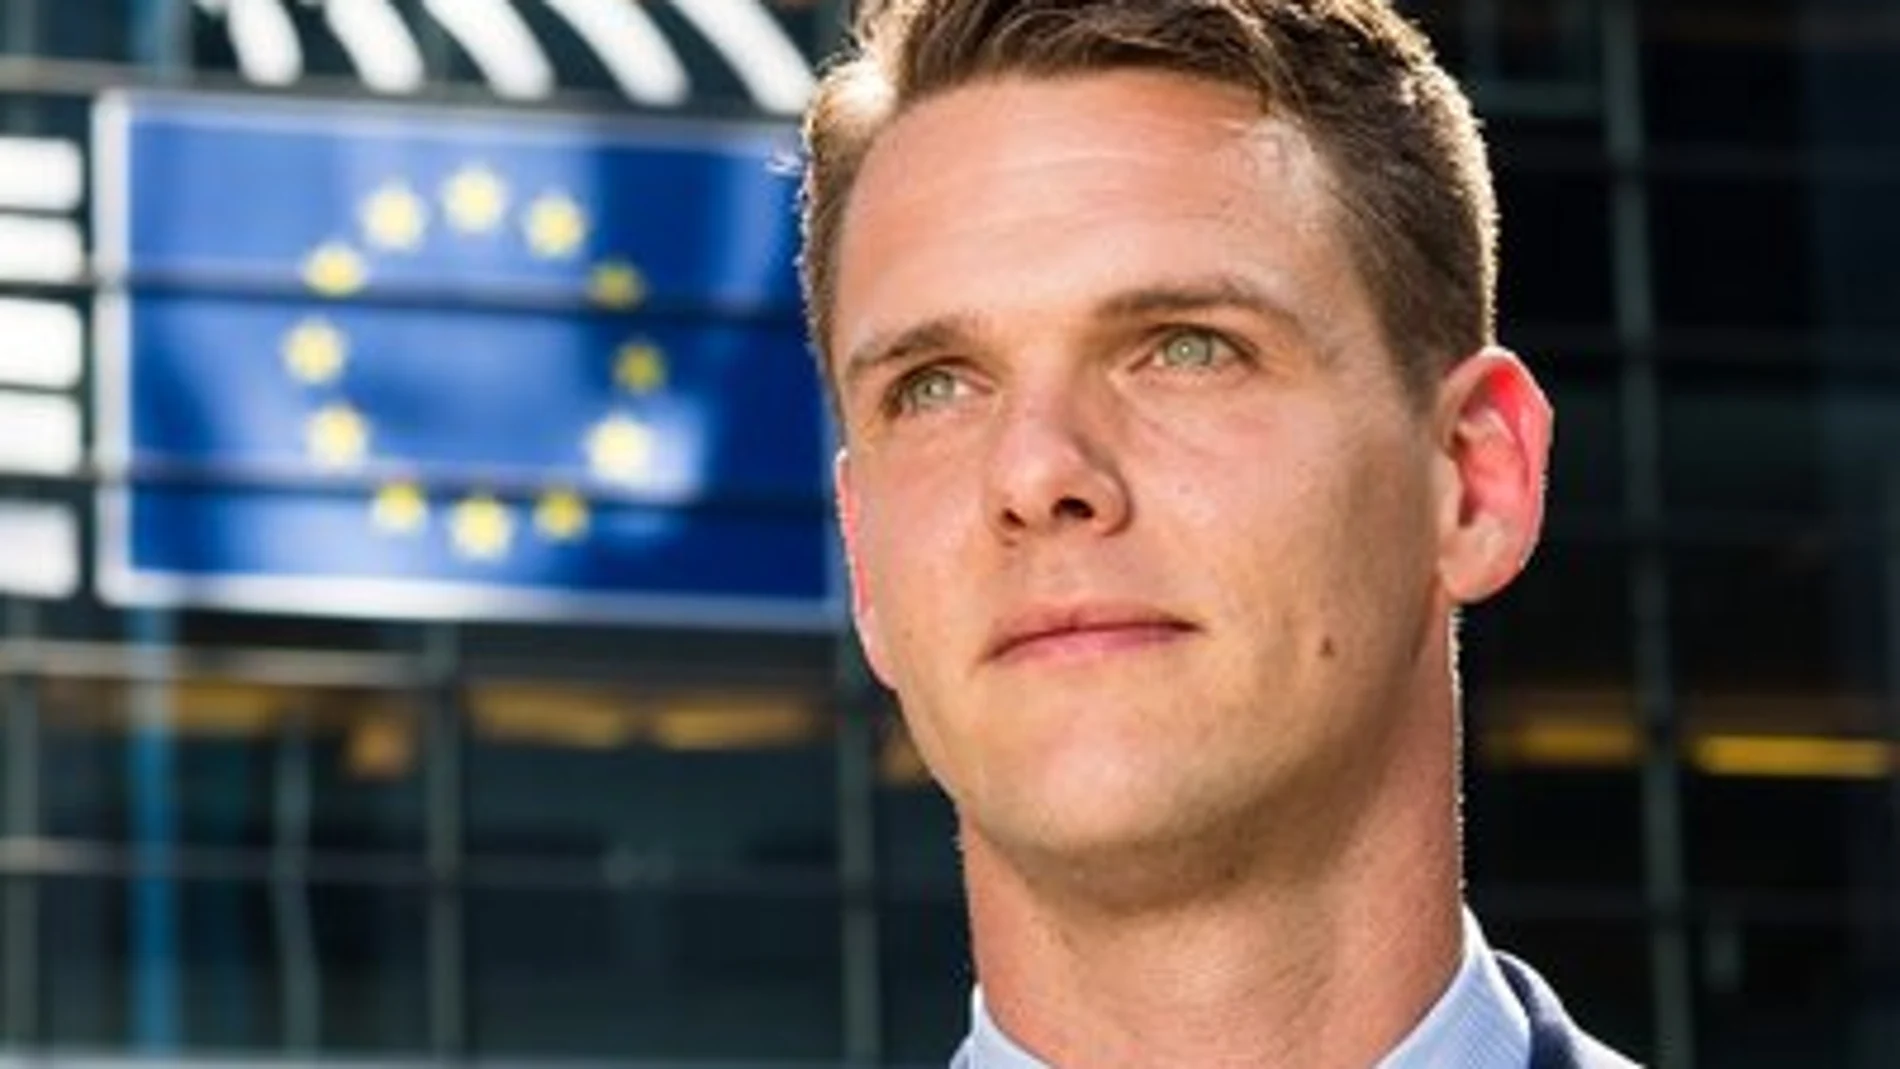 Christopher Fjellner, eurodiputado del Partido Moderado de Suecia